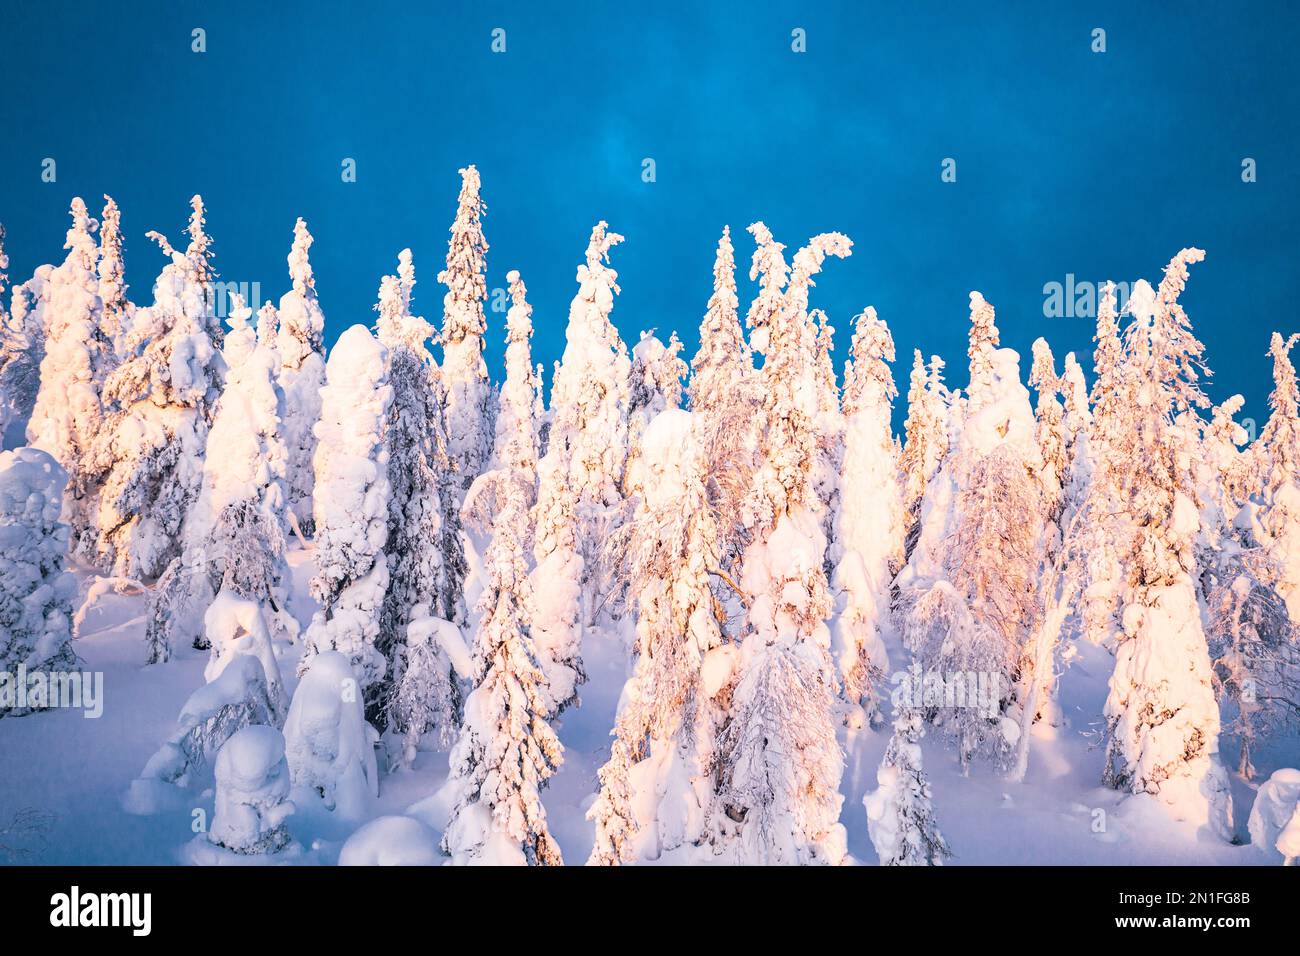 Épicéa enneigé congelé à la tombée de la nuit d'hiver, Parc national de Riisitunturi, Posio, Laponie, Finlande, Europe Banque D'Images